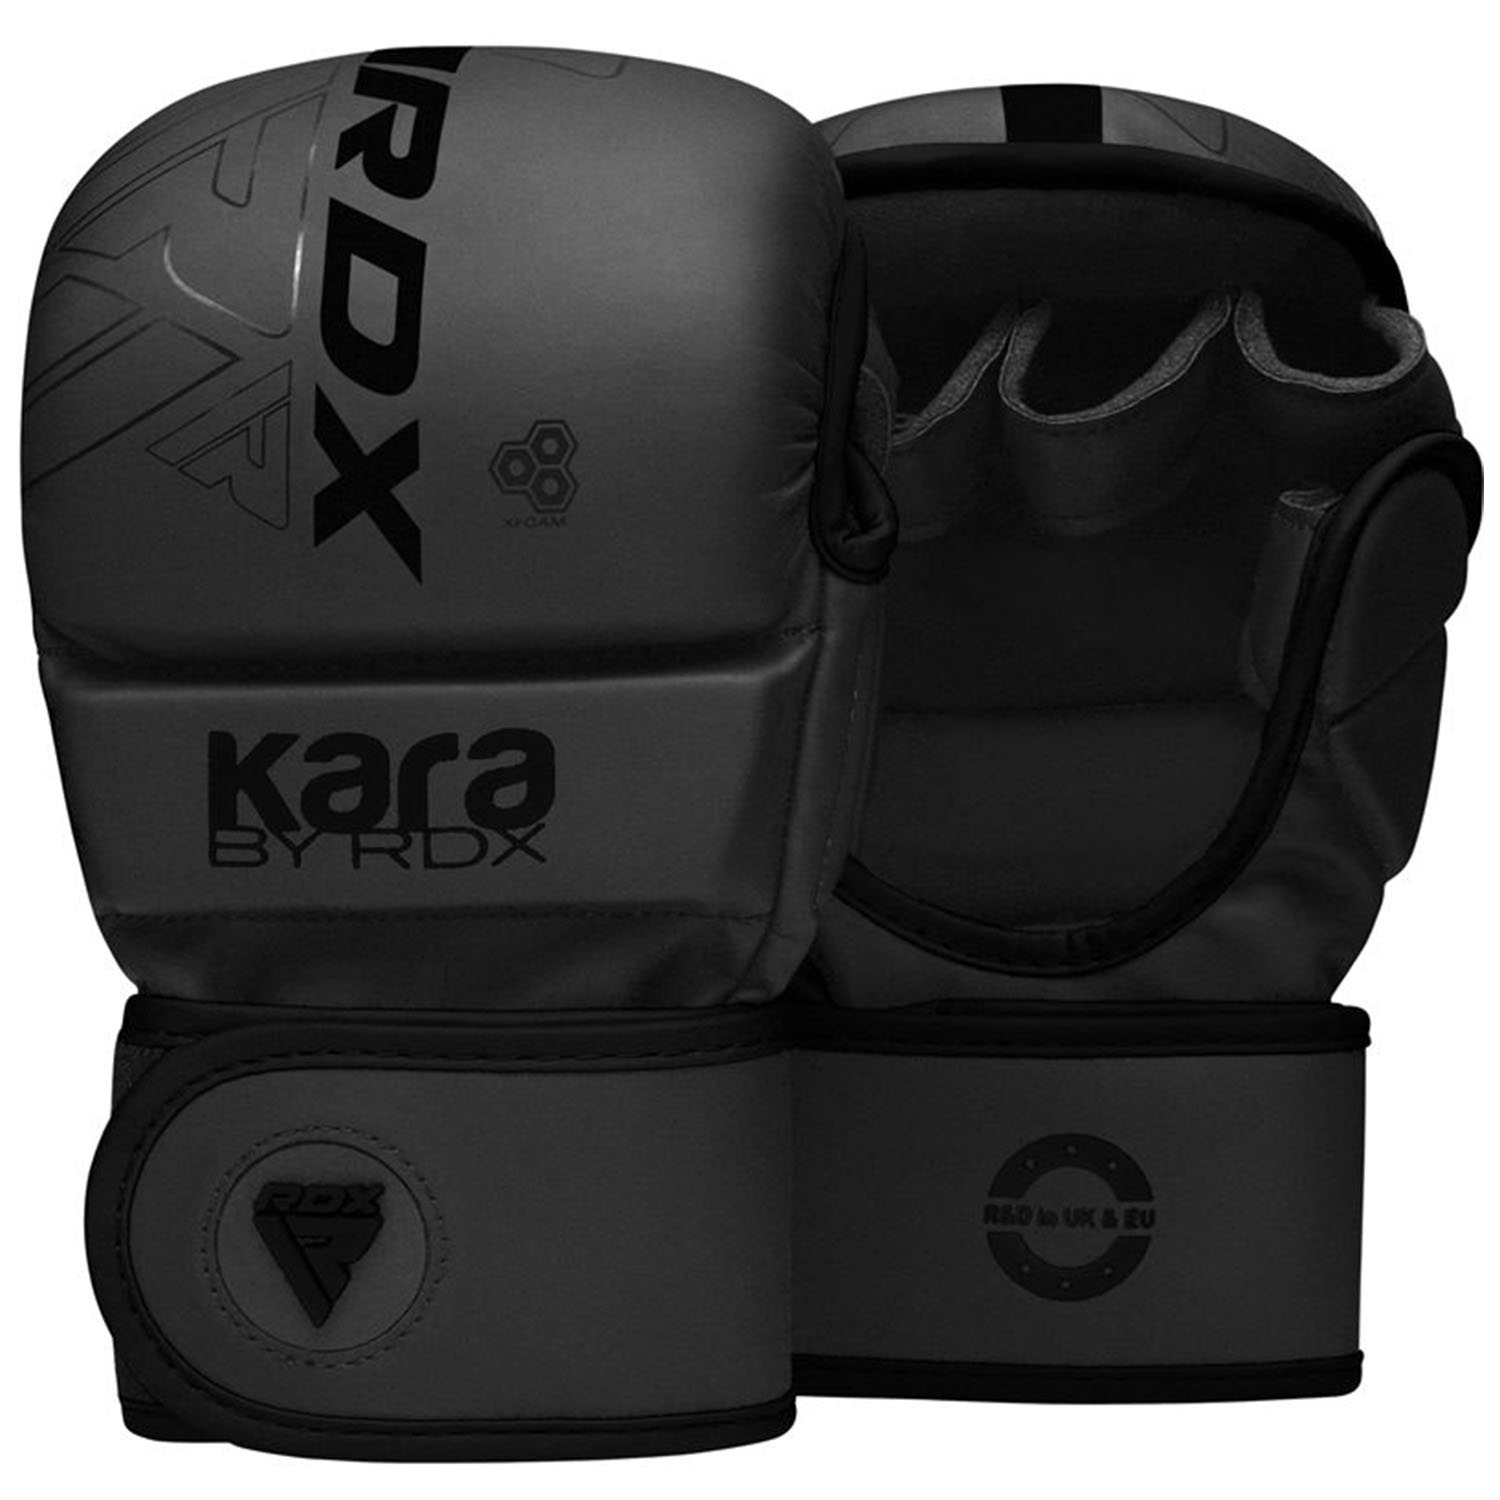 RDX MMA Sparring Boxing Gloves, Kara Series F6, black-matt, L/XL